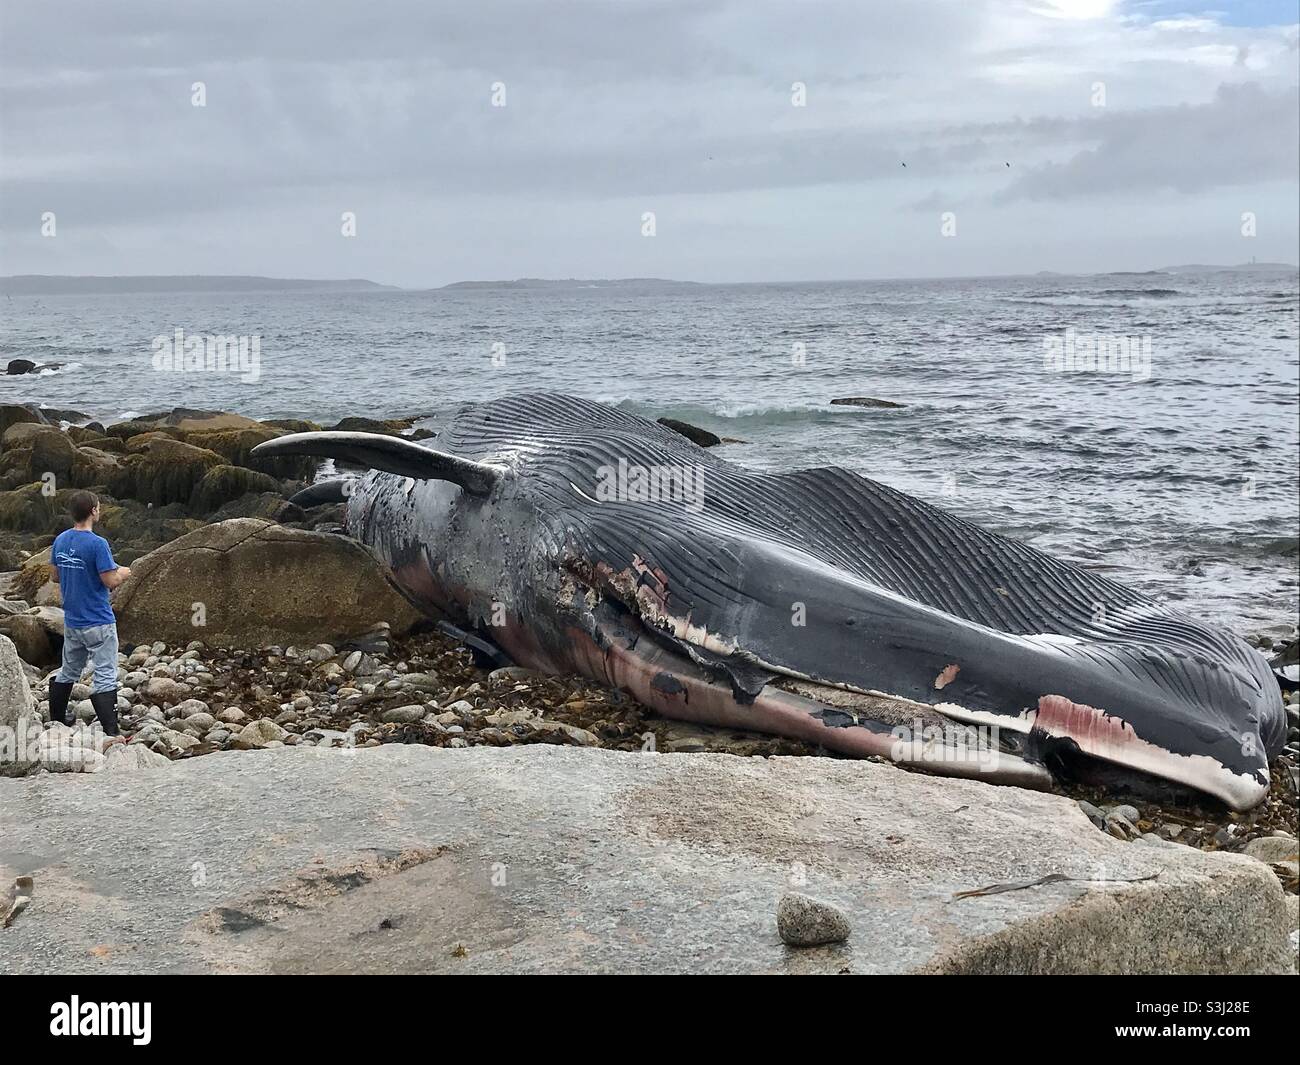 Actualités en direct. Une baleine bleue de 30 mètres, morte, s'est entorée sur les rochers, Halifax, Canada, septembre 2021 Banque D'Images